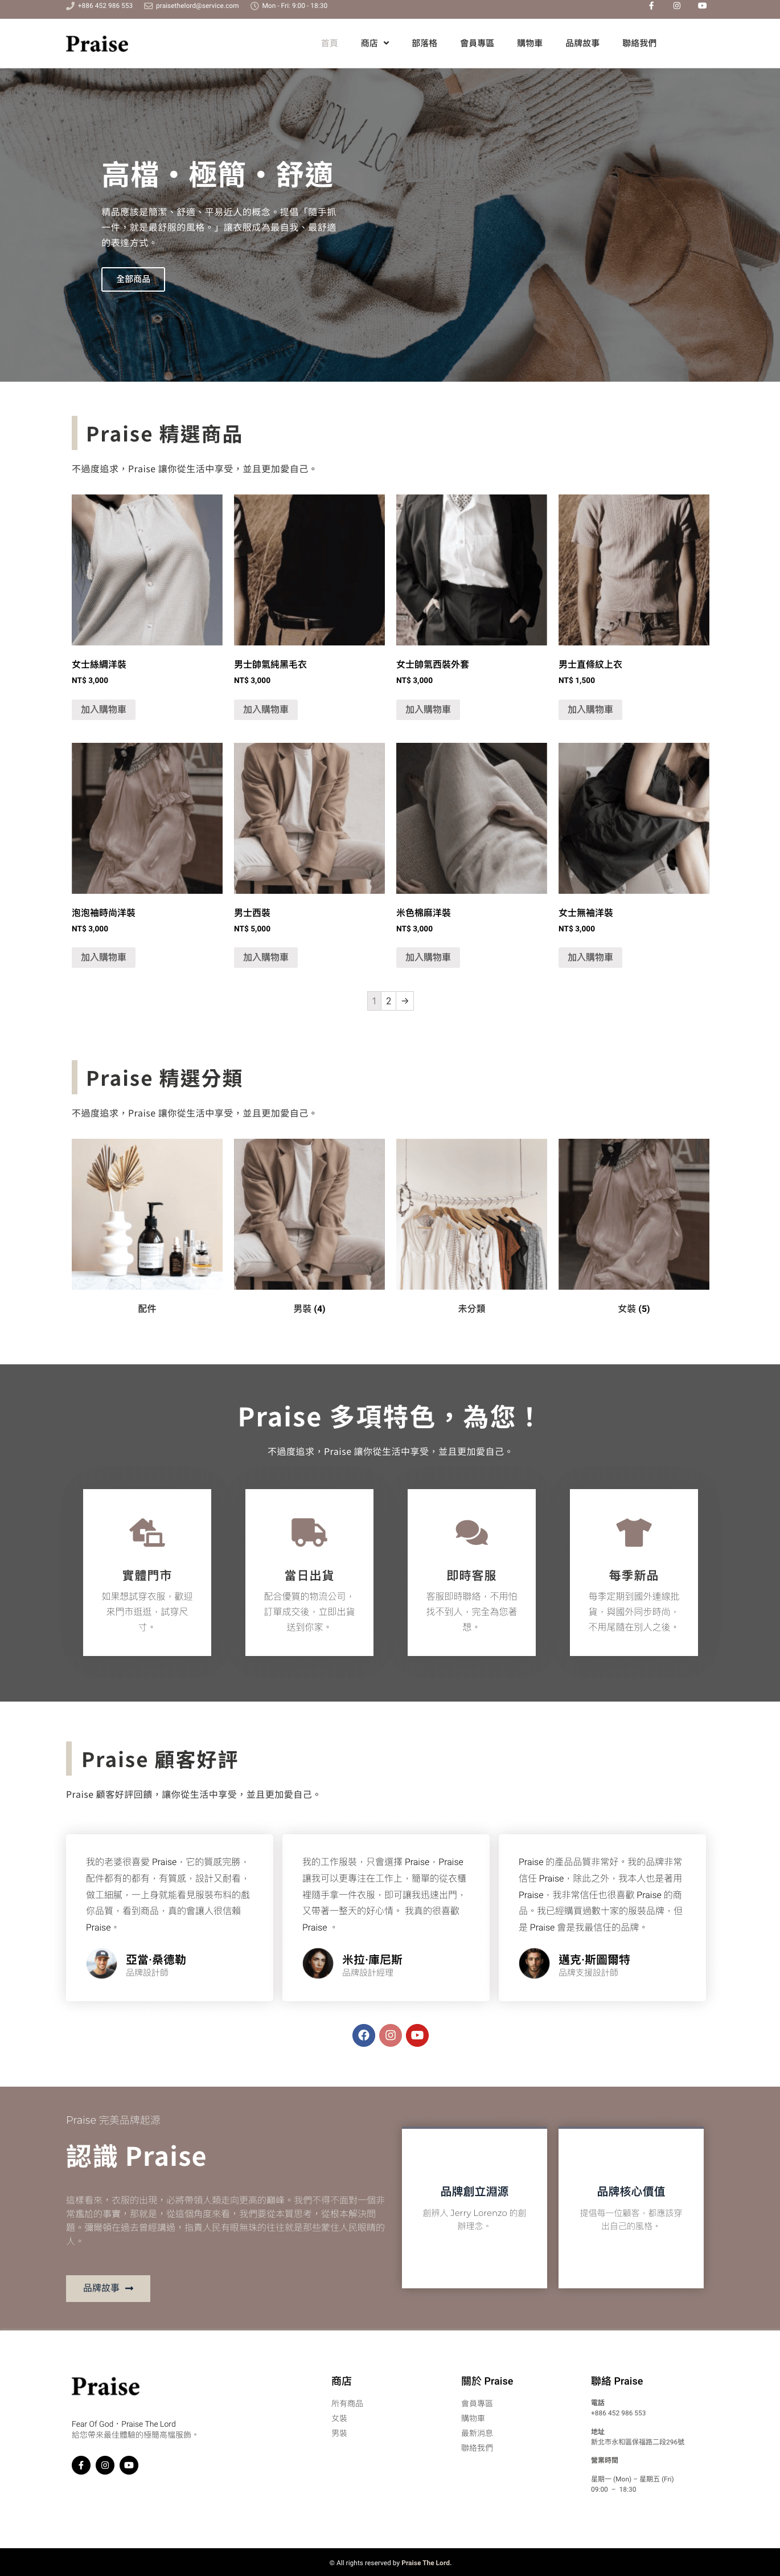 Praise 服飾｜犬哥網站 - WordPress 網頁設計公司